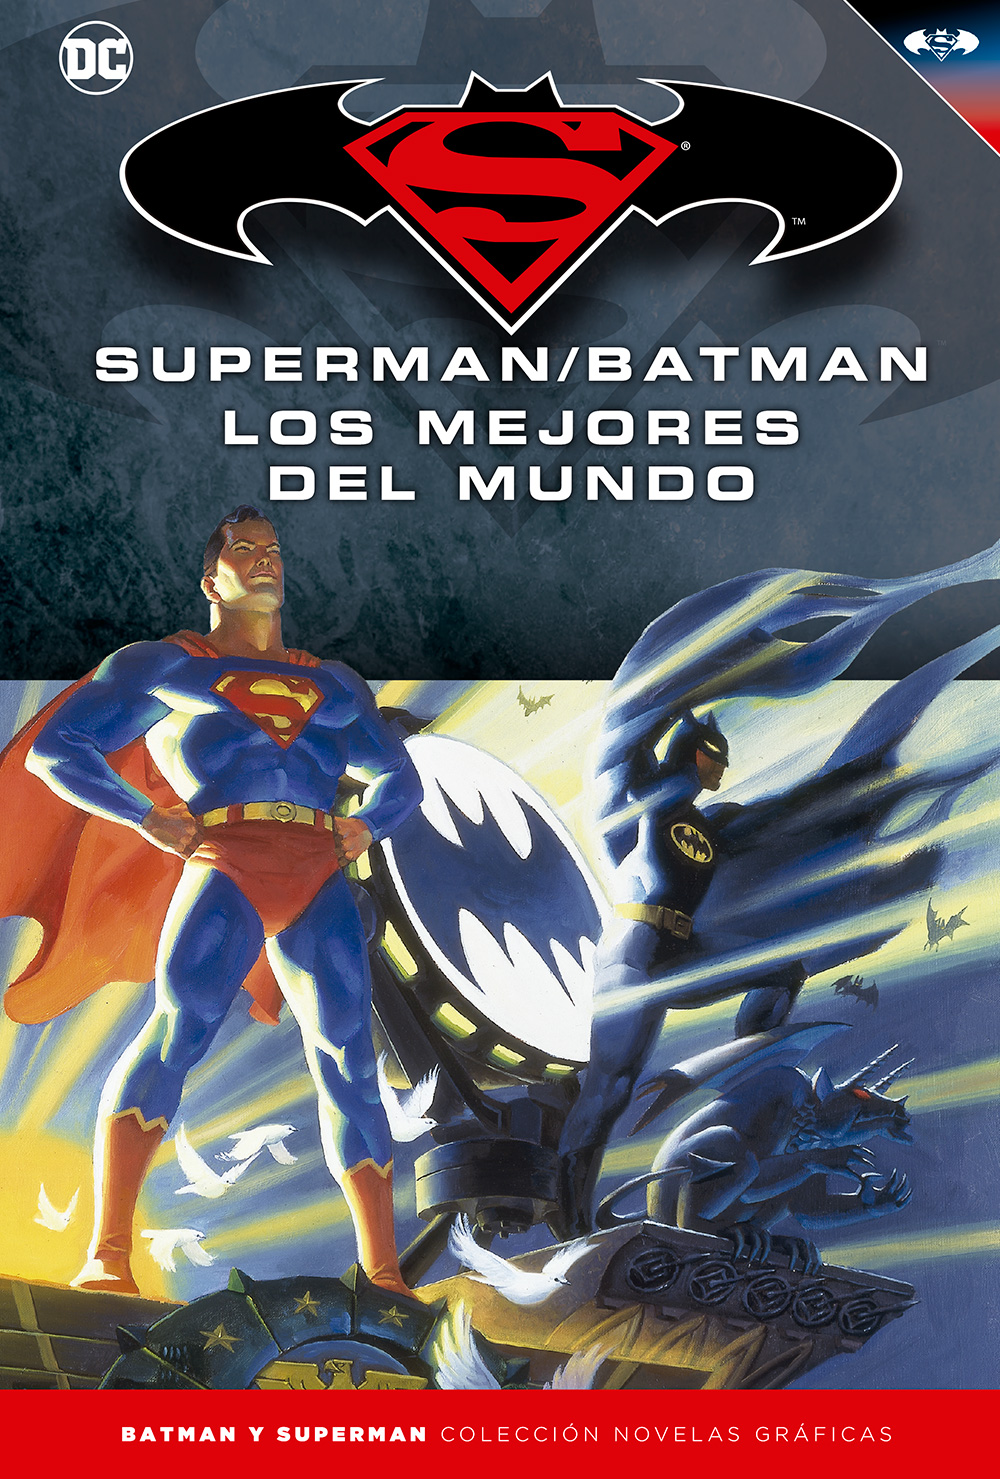 32-33 - [DC - Salvat] Batman y Superman: Colección Novelas Gráficas - Página 7 Portada_BMSM_16_LosMejoresdelMundo